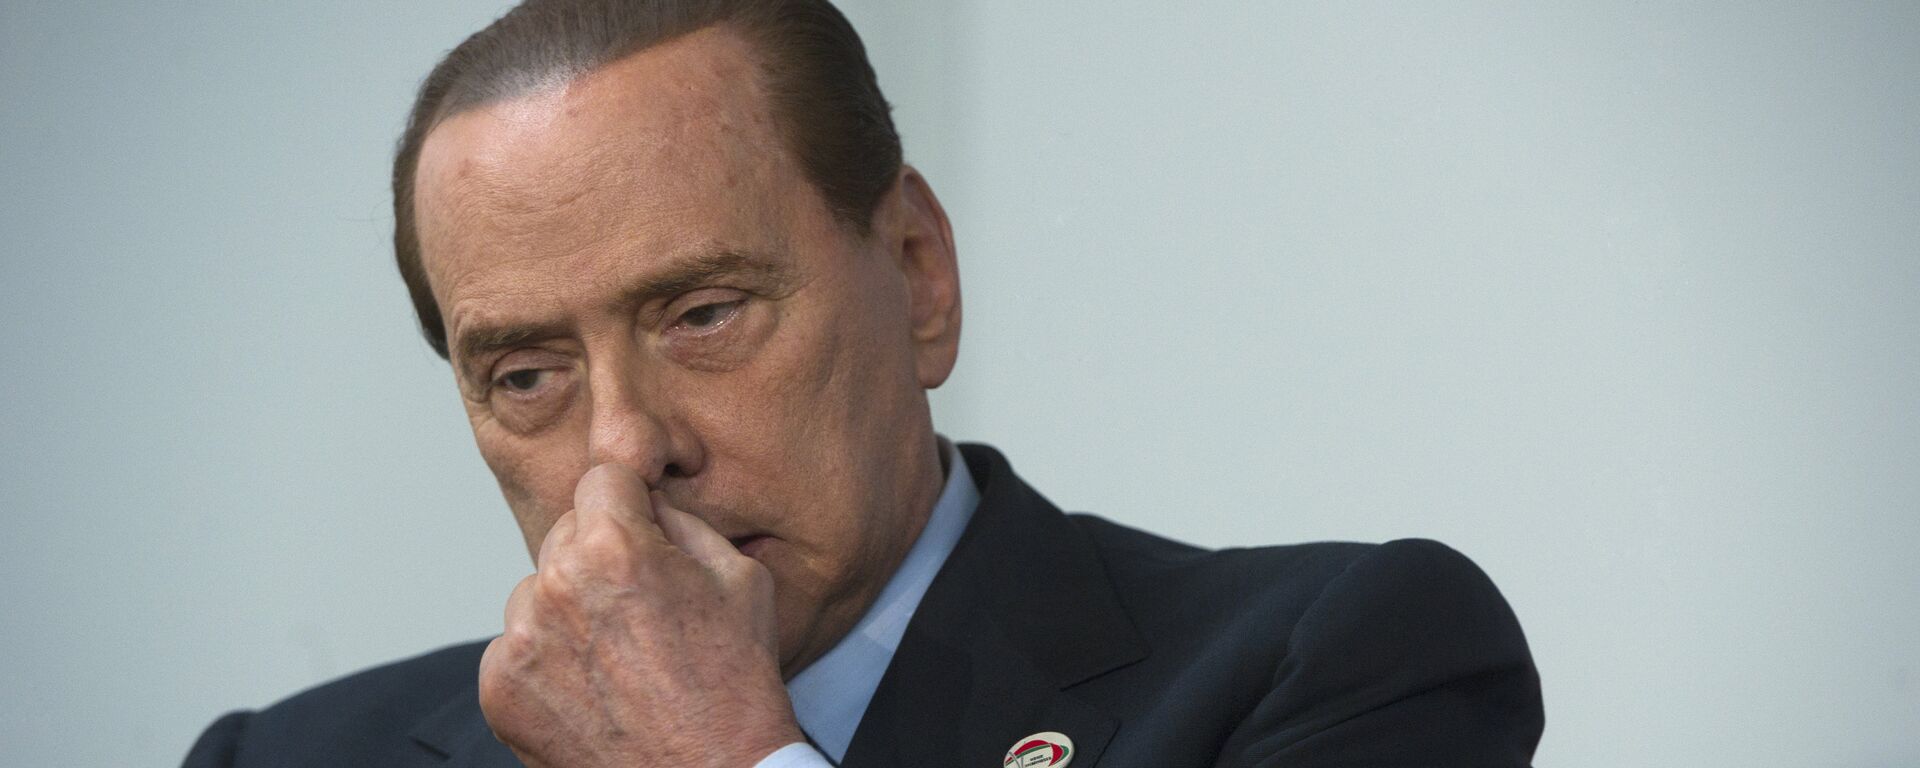 Silvio Berlusconi - Sputnik Mundo, 1920, 17.03.2019